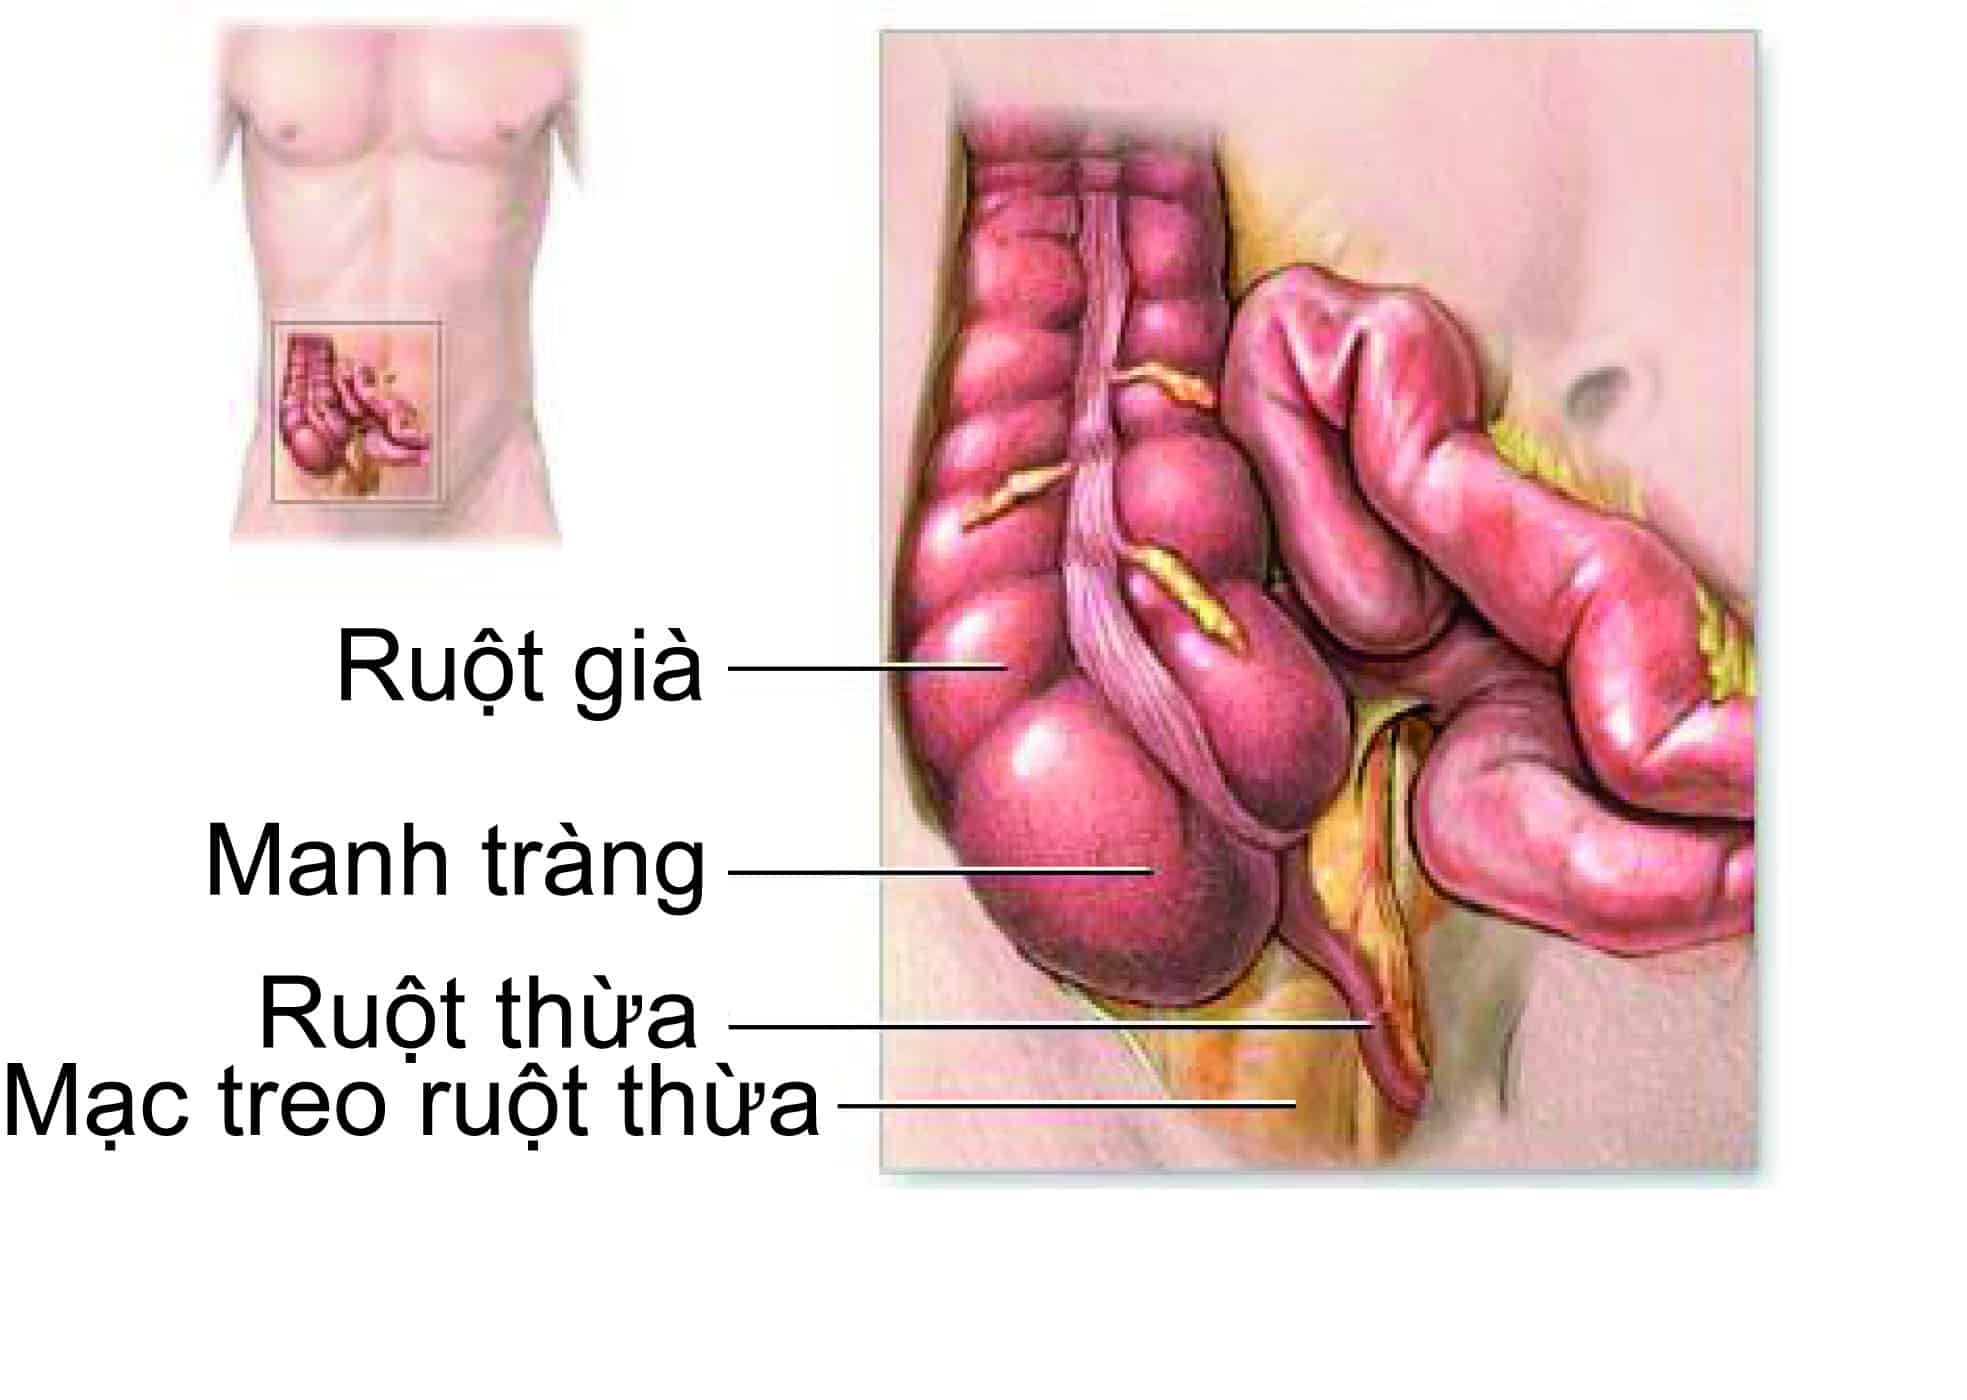 Lập Kế Hoạch Chăm Sóc Bệnh Nhân Viêm Ruột Thừa